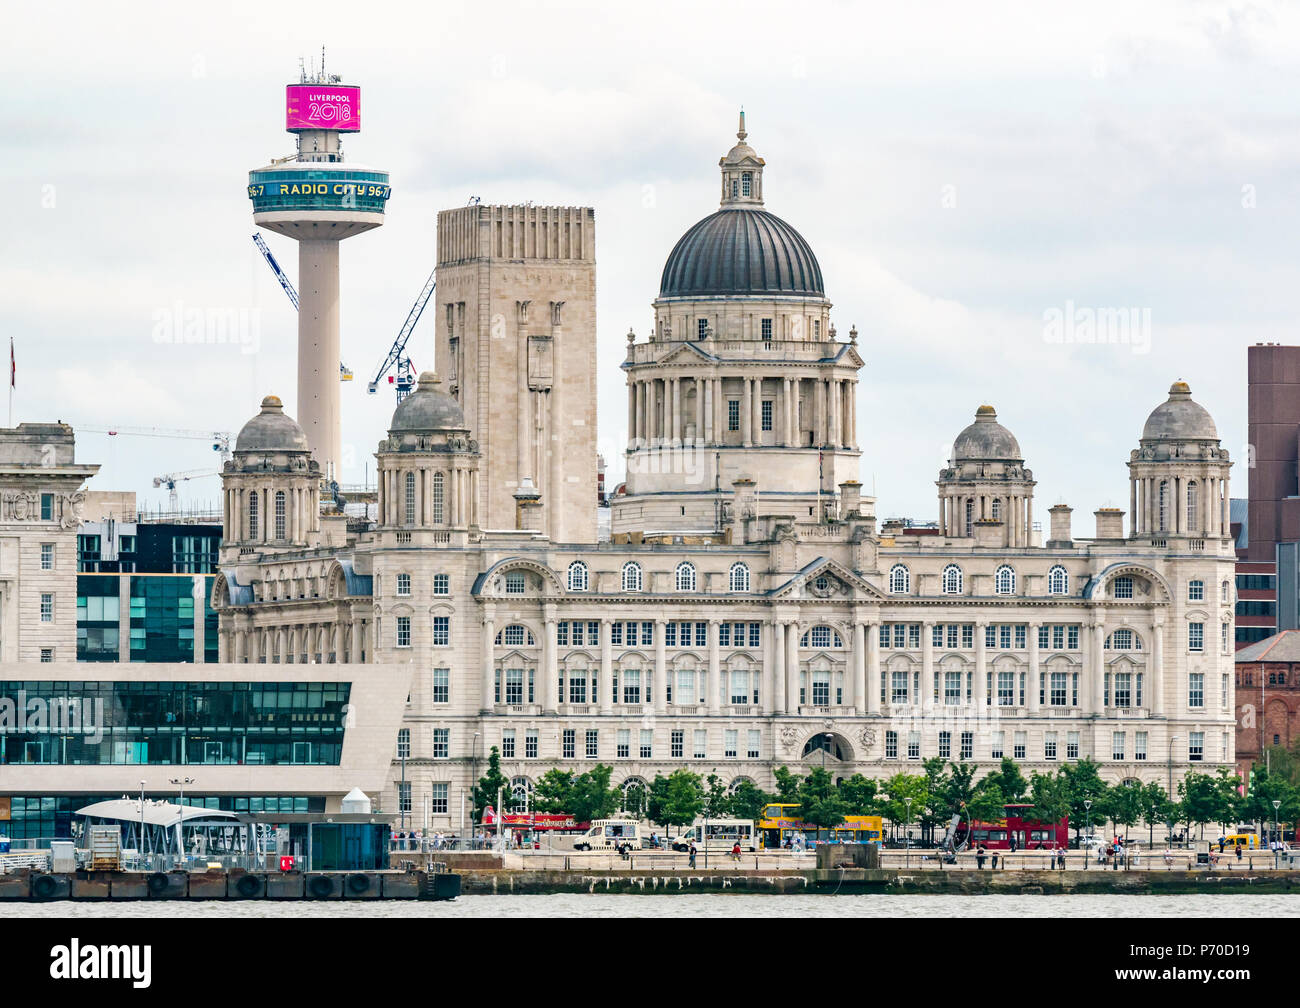 St. John's Beacon Radio City Aussichtsturm und Grand gewölbte Edwardian Barockstil Hafen von Liverpool Gebäude, Riverside, Liverpool, England, UK Stockfoto